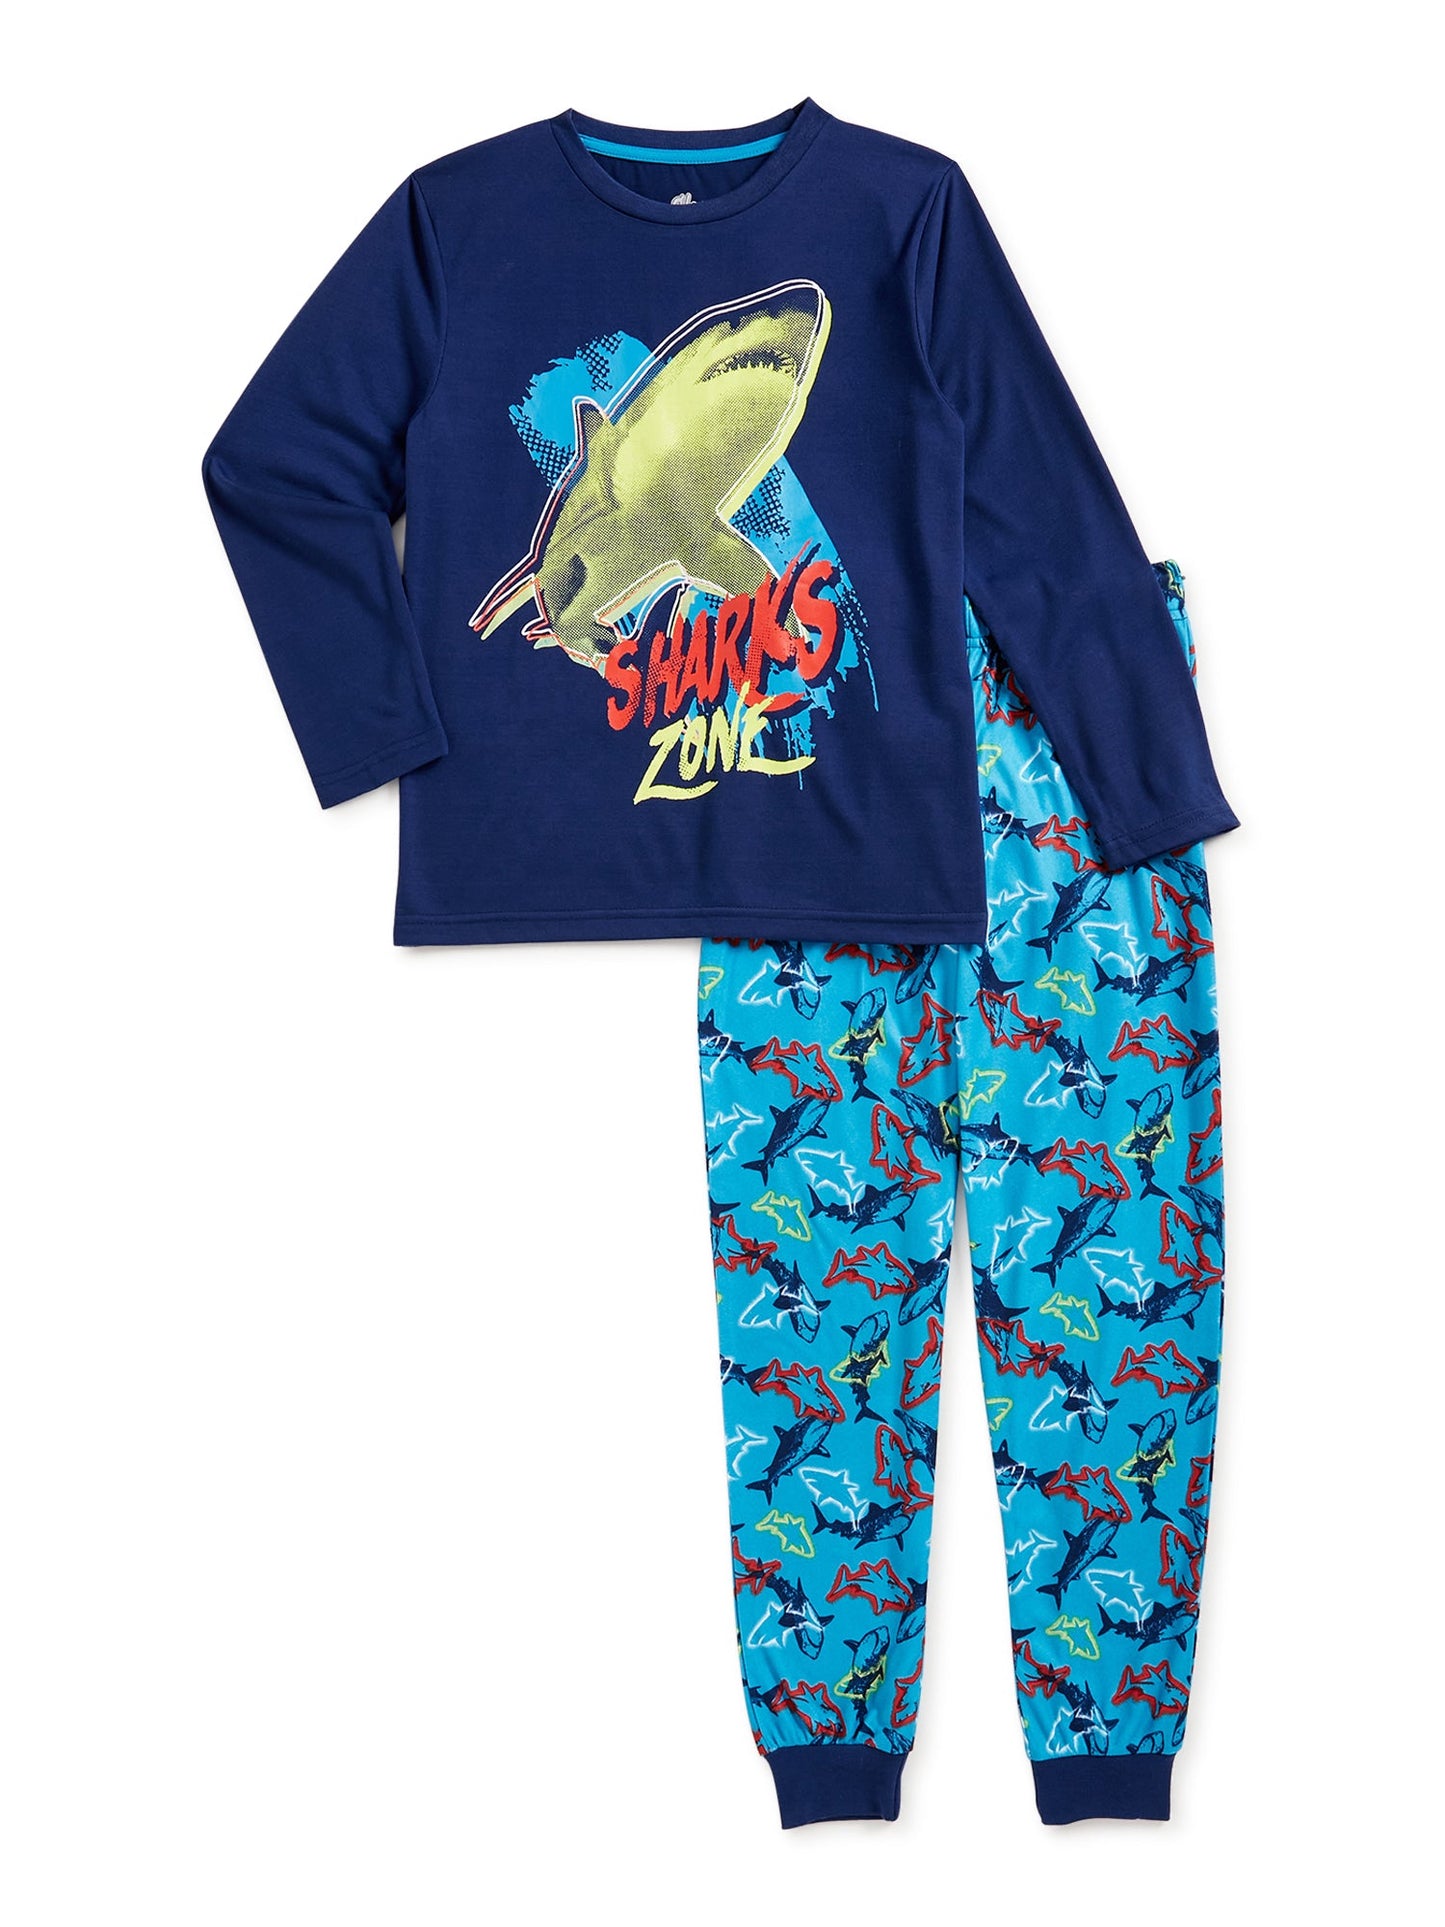 Sleep On It Shark Zone (Pijama)